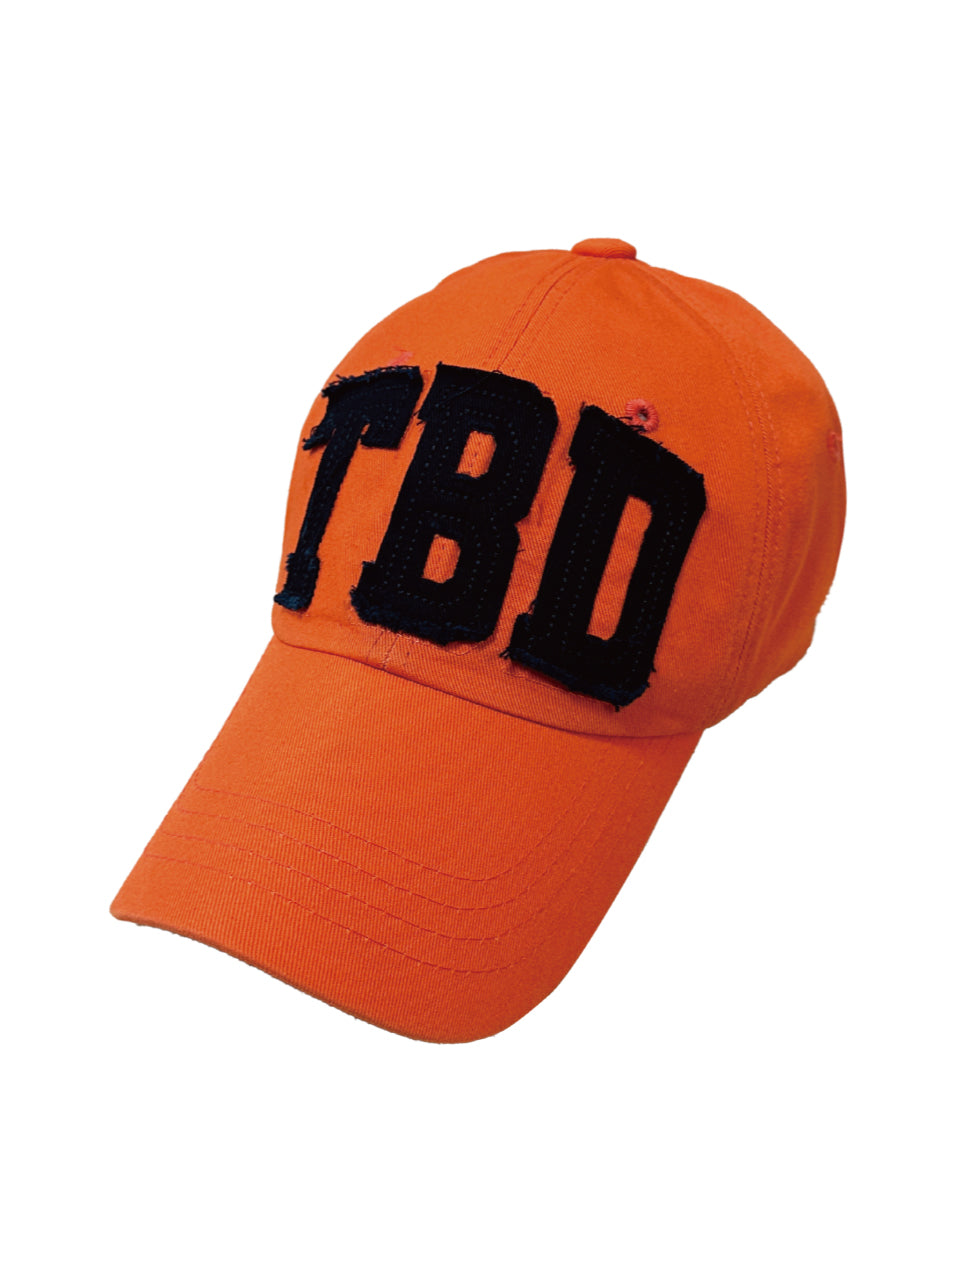 TBD logo cap Orange